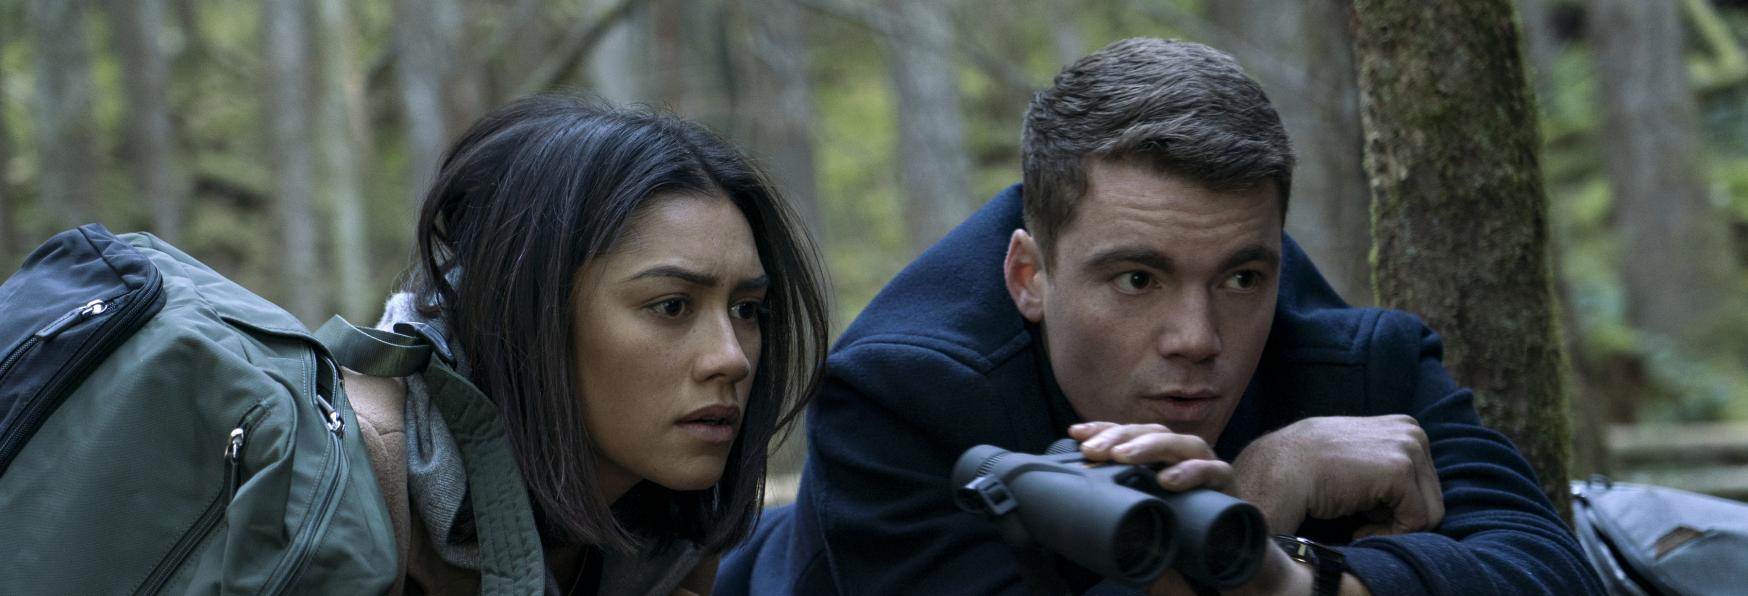 The Night Agent 2 ci sarà! Netflix rinnova la Serie TV per una nuova Stagione